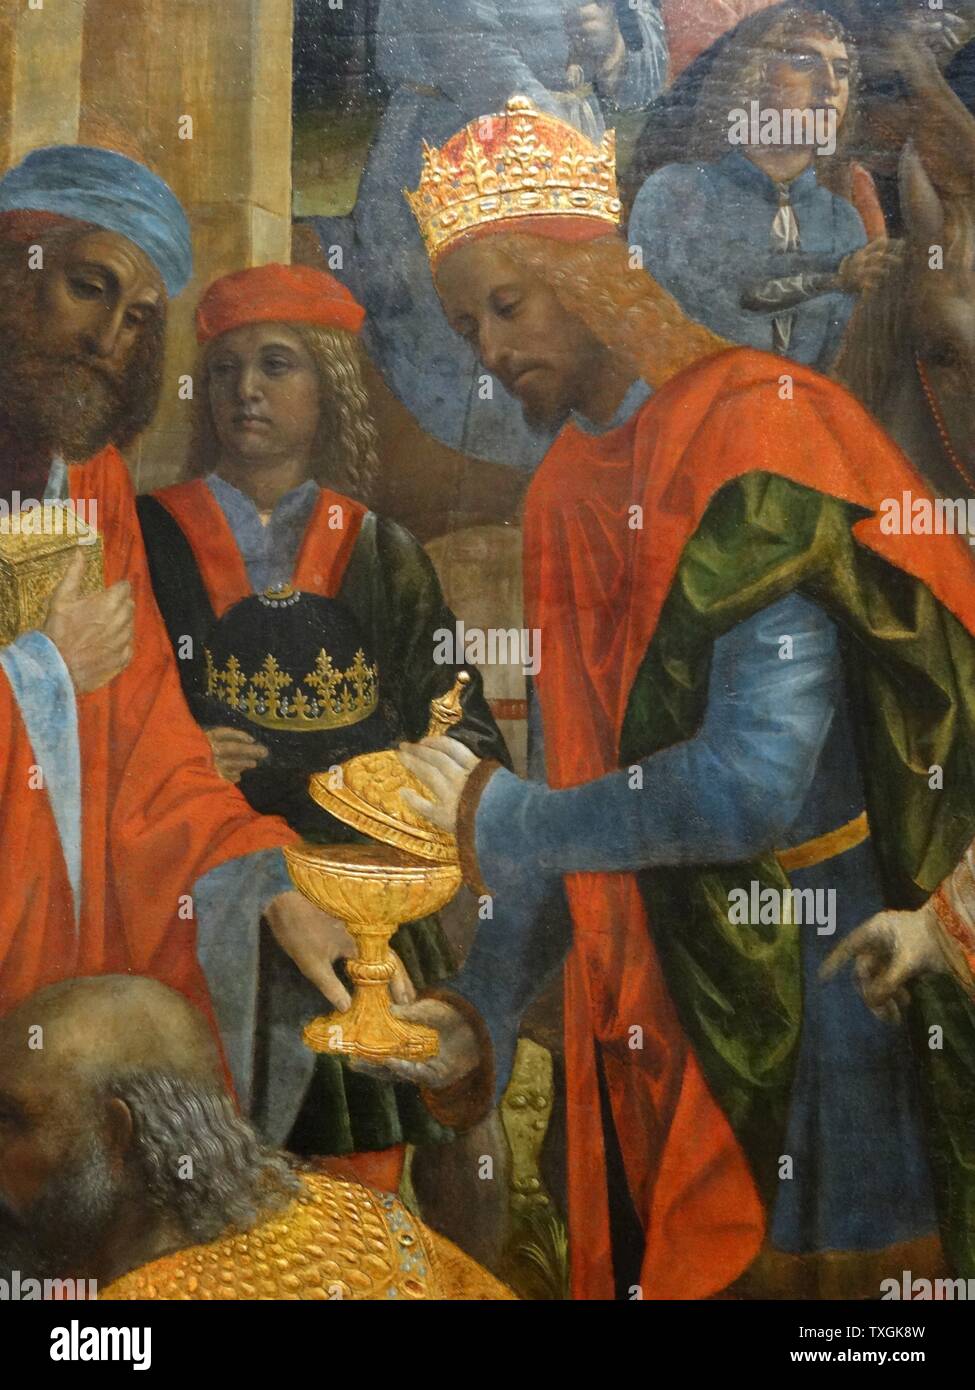 Dettaglio dal dipinto intitolato "L'Adorazione dei Magi" di Vincenzo Foppa (1430-1515) un pittore Northern-Italian, attivo in stile rinascimentale. Datata XVI Secolo Foto Stock